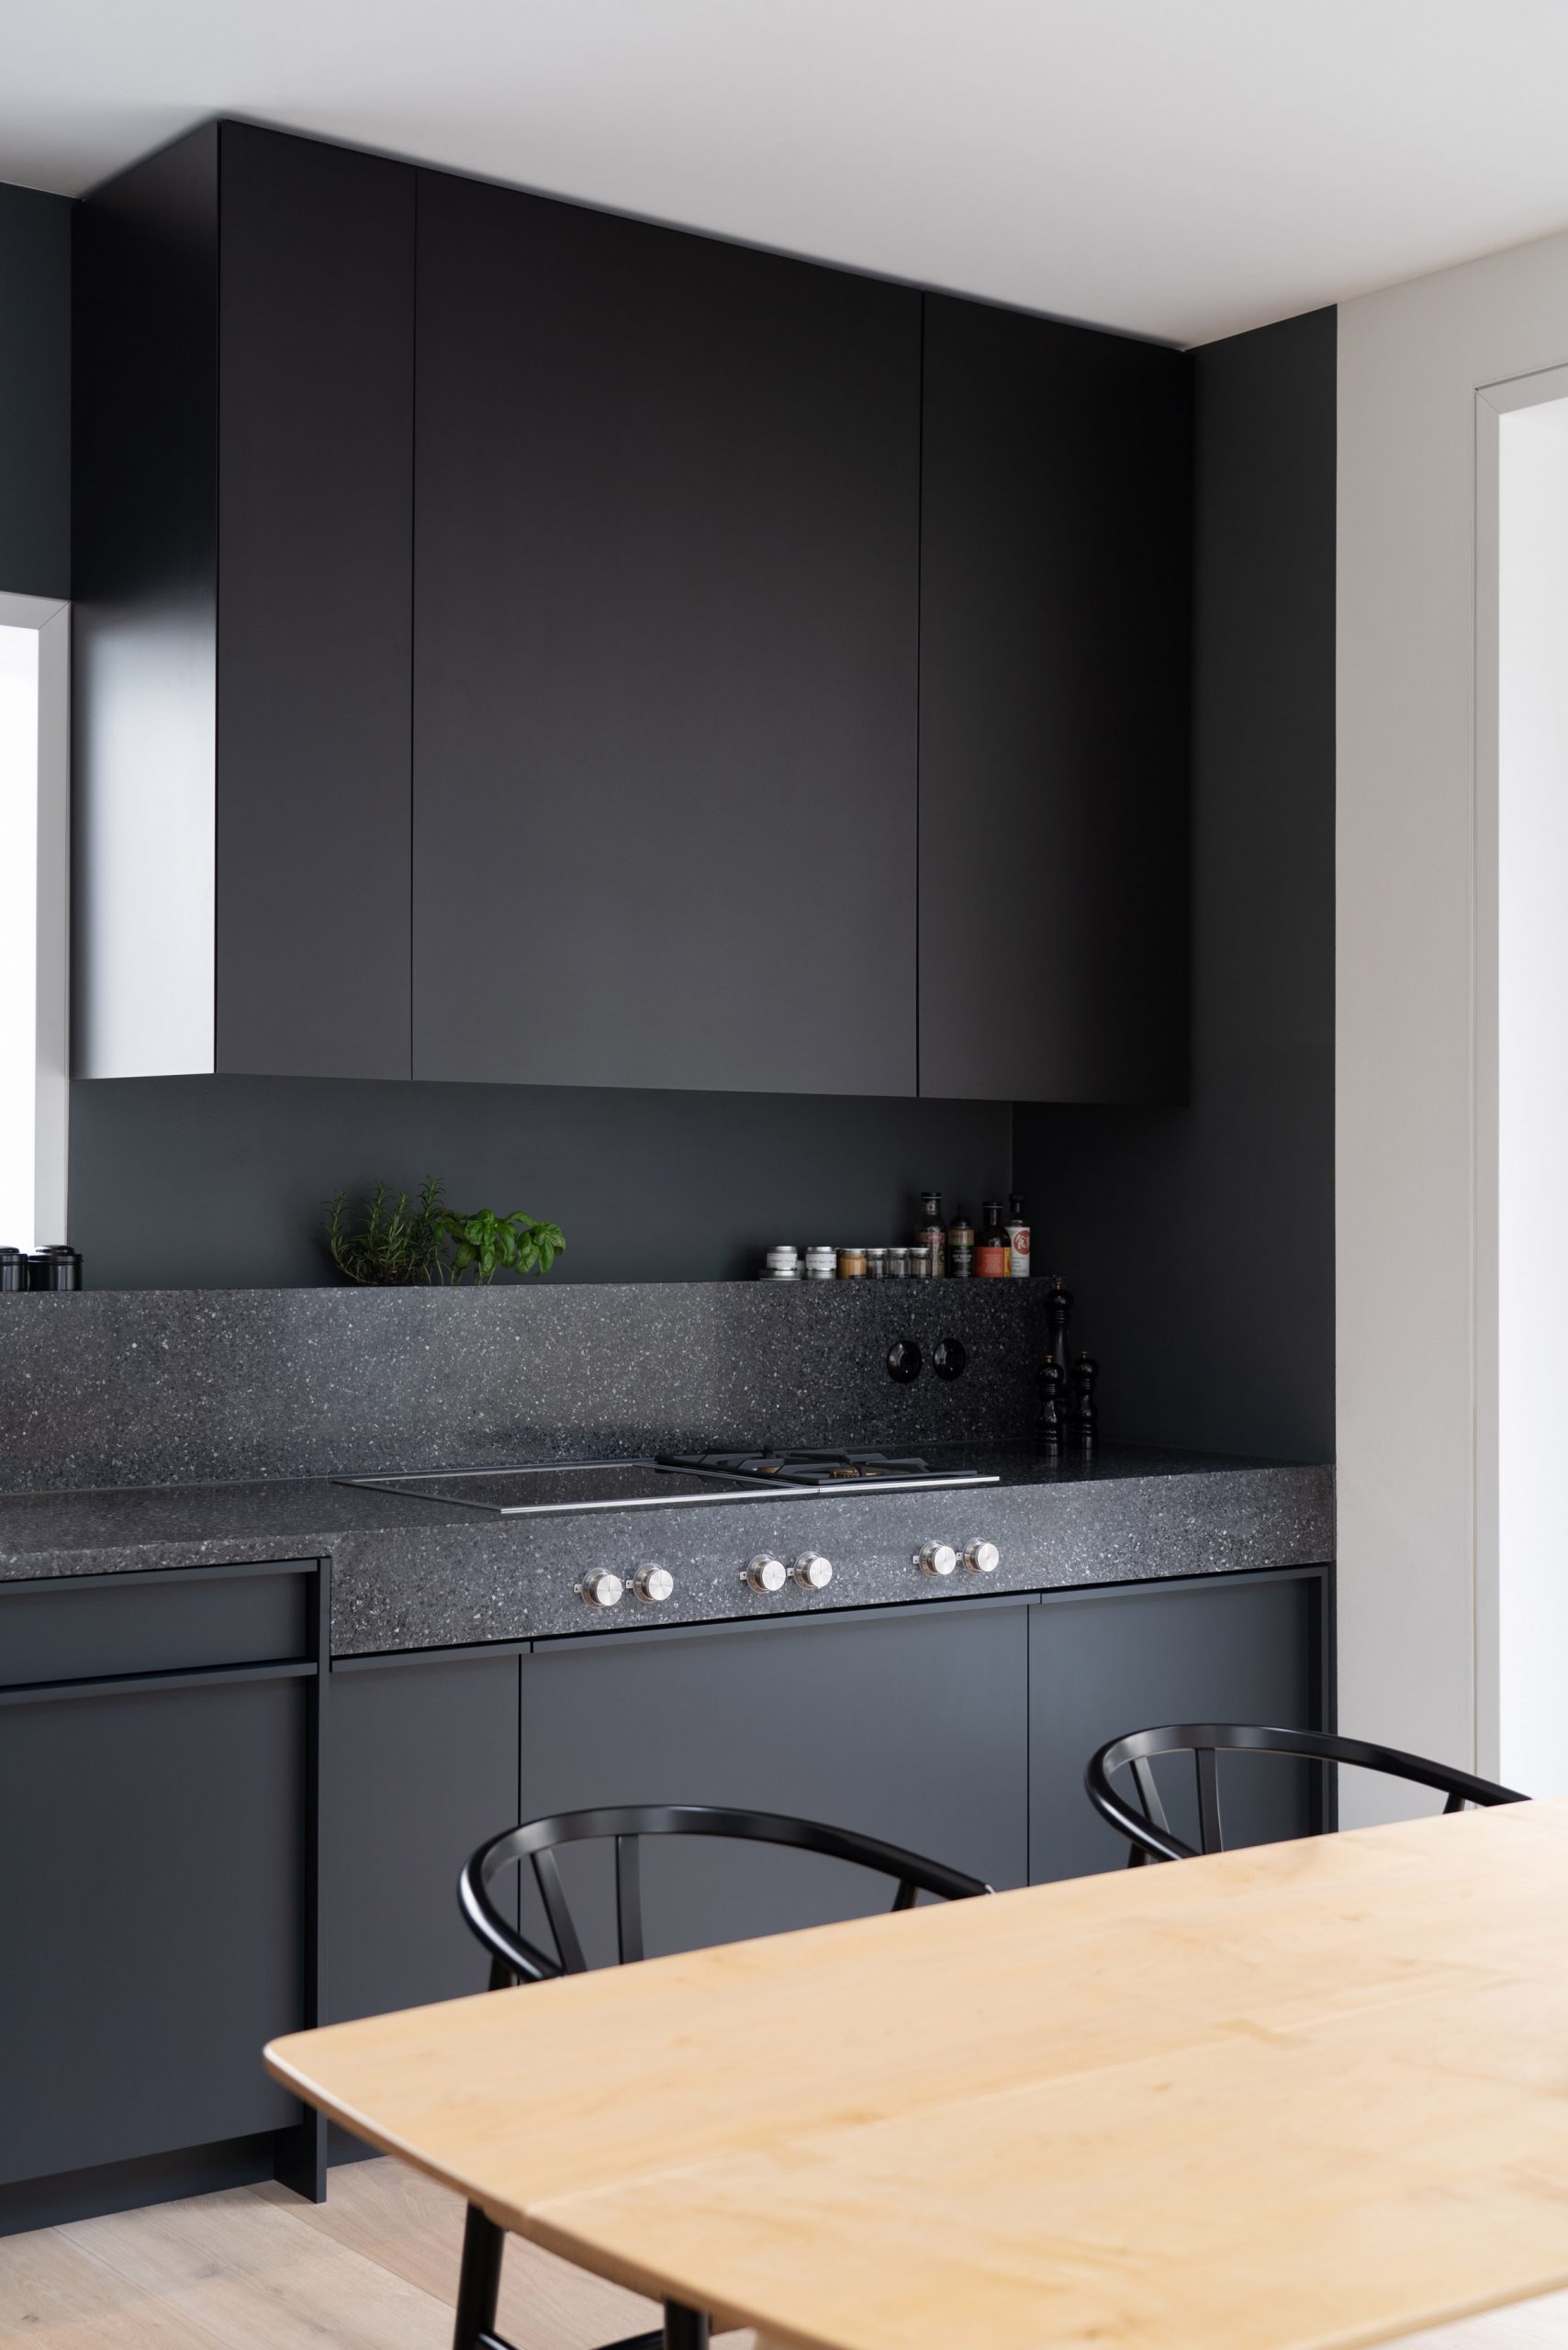 Dark grey kitchen contrasts against the light interior